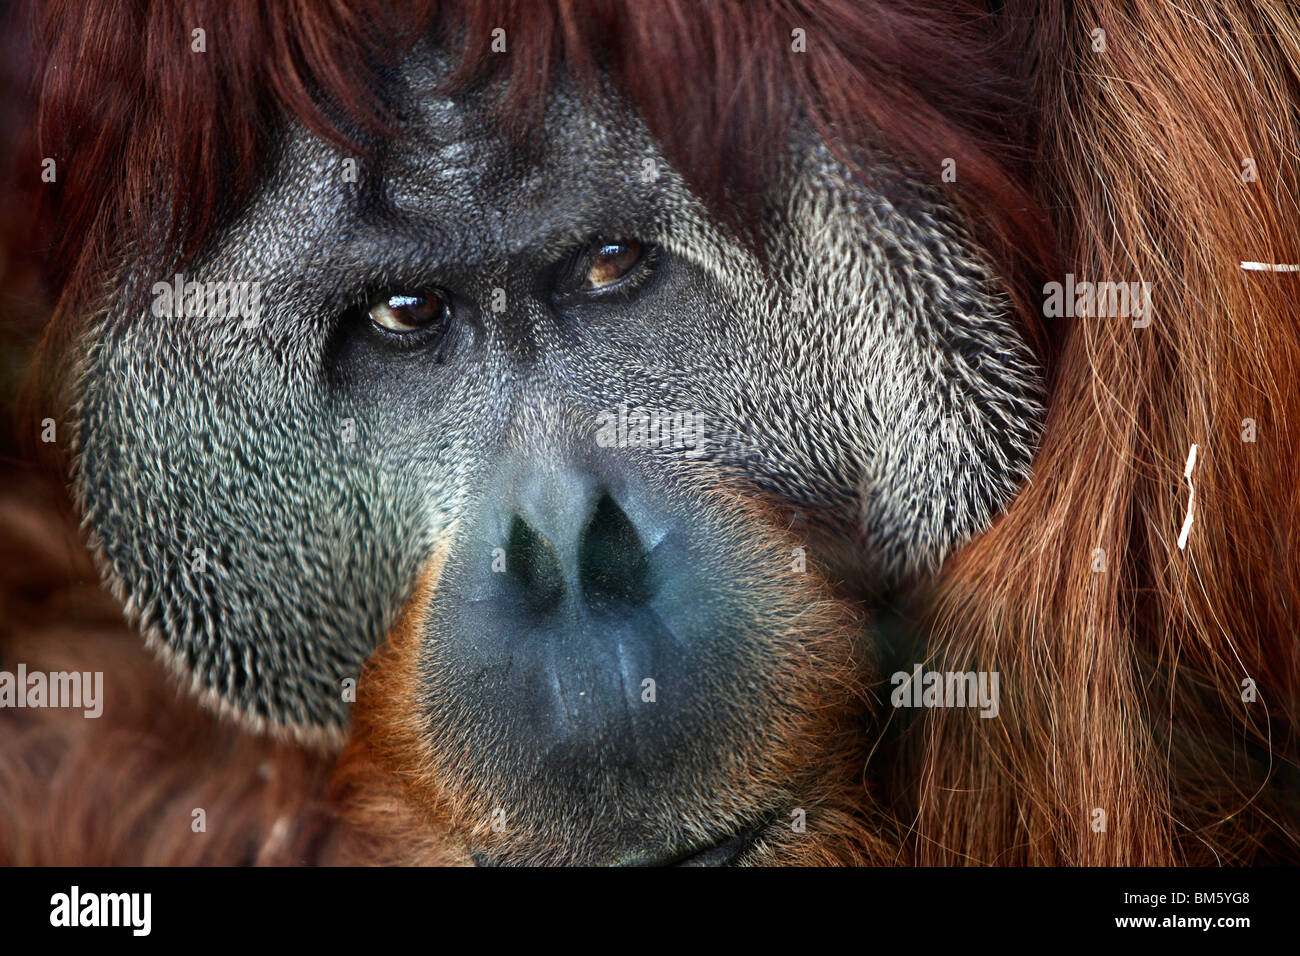 Orang-outang, Orangutan, monkey in a zoo. Stock Photo